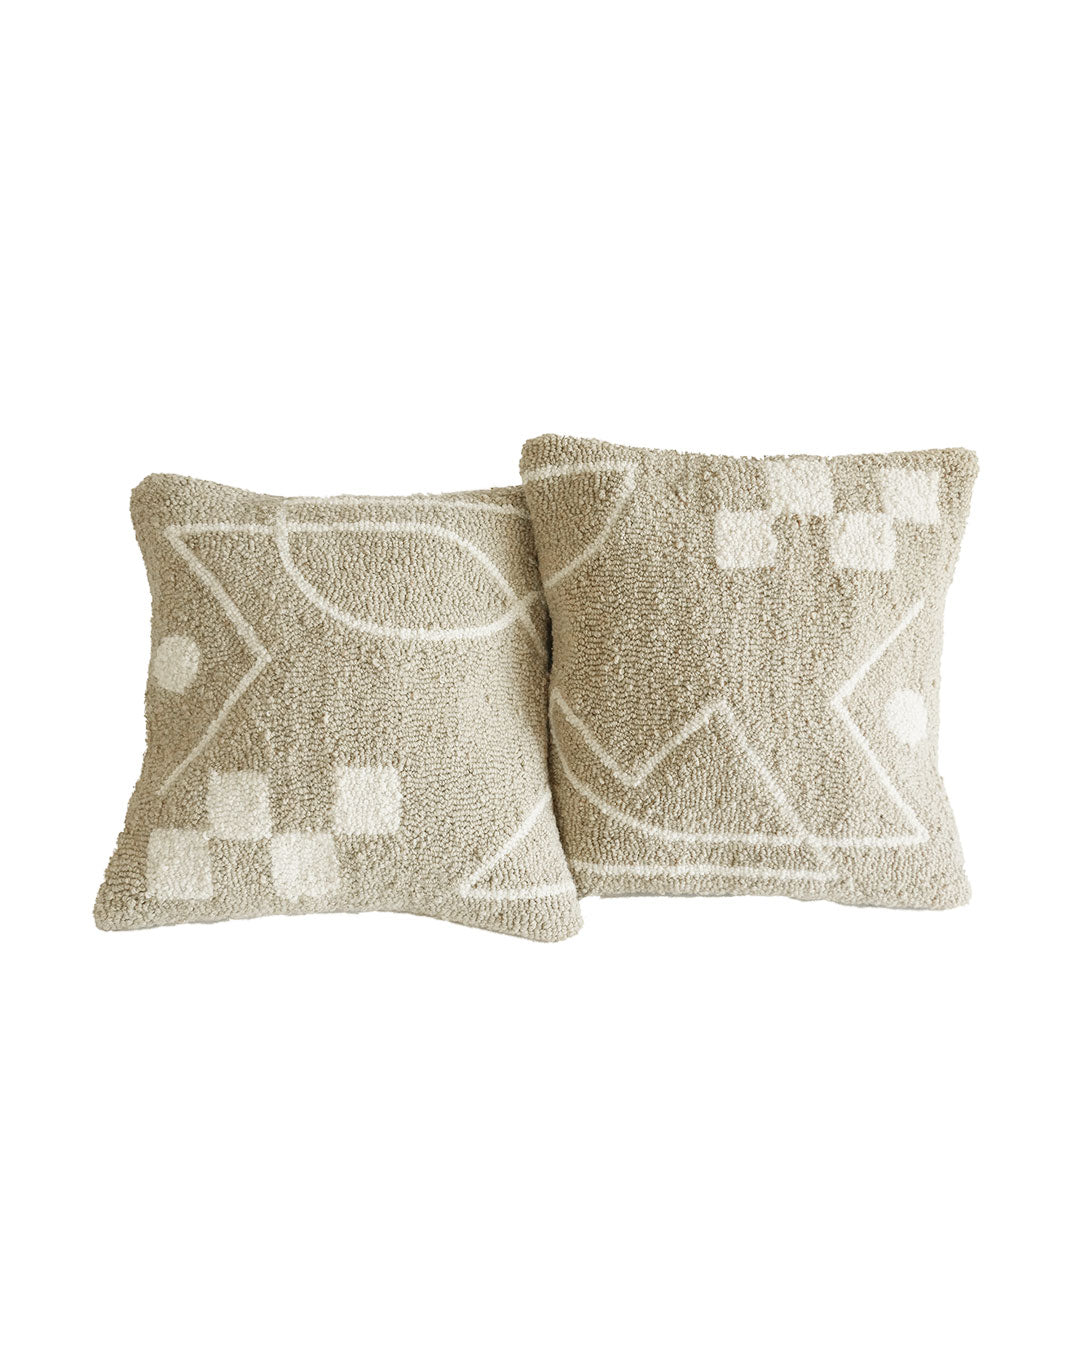 Suna Tufted Cushion Covers - Set of 2- Ito